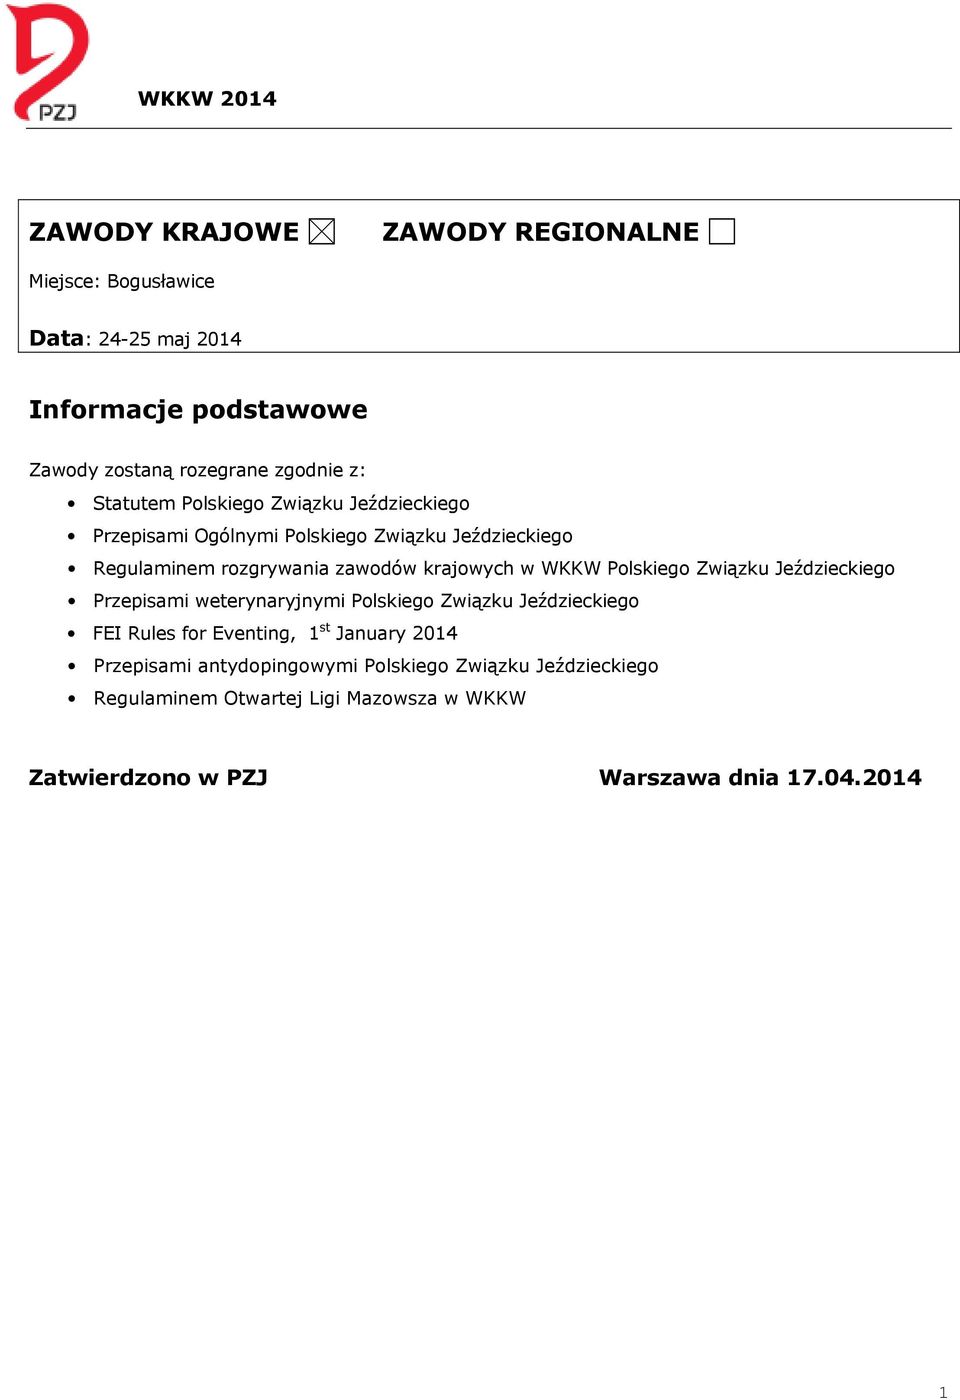 WKKW Polskiego Związku Jeździeckiego Przepisami weterynaryjnymi Polskiego Związku Jeździeckiego FEI Rules for Eventing, 1 st January 2014